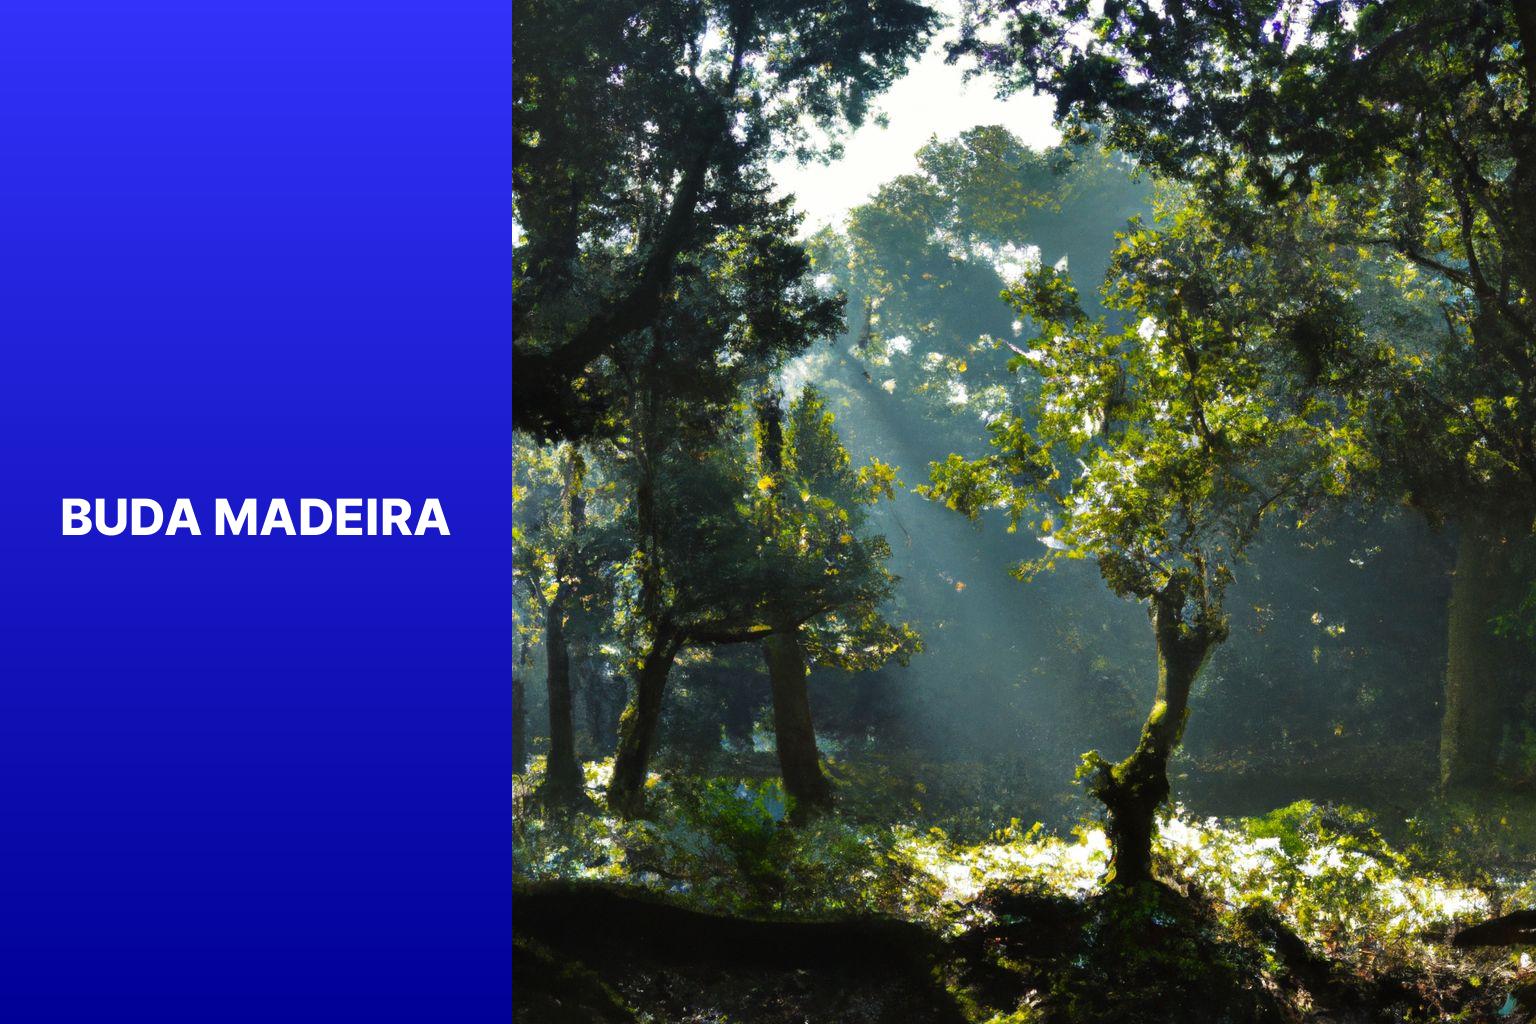 Buda Madeira